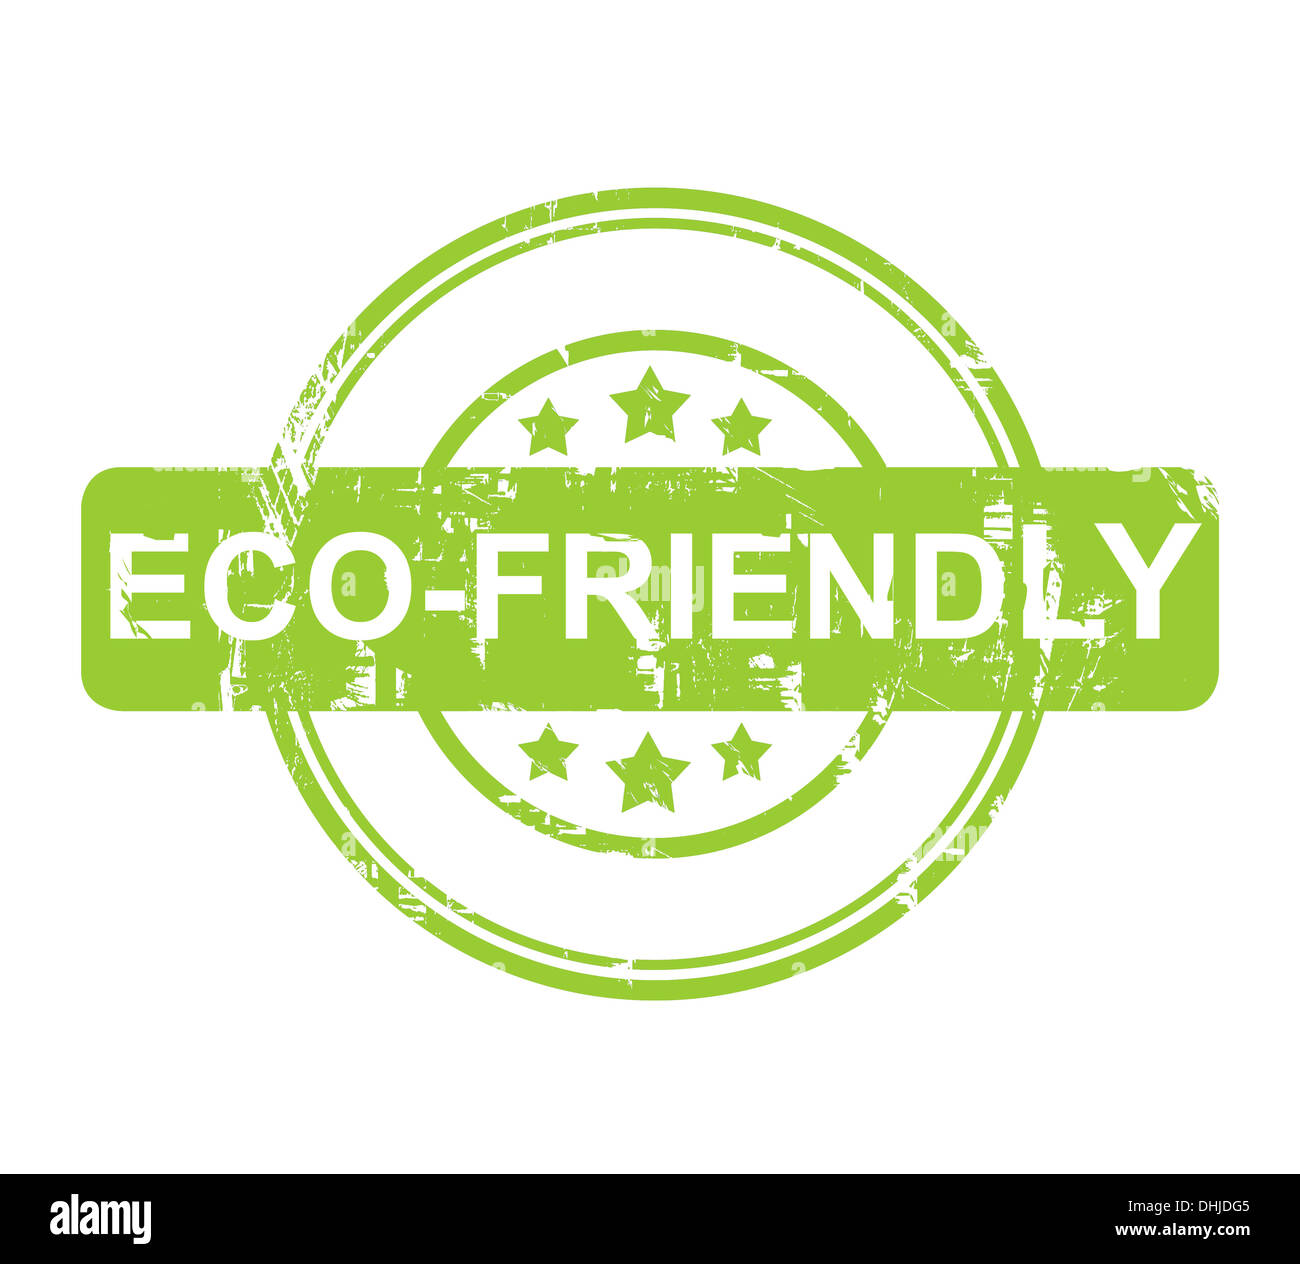 Eco Friendly grünen Stempel mit Sternen isoliert auf einem weißen Hintergrund. Stockfoto